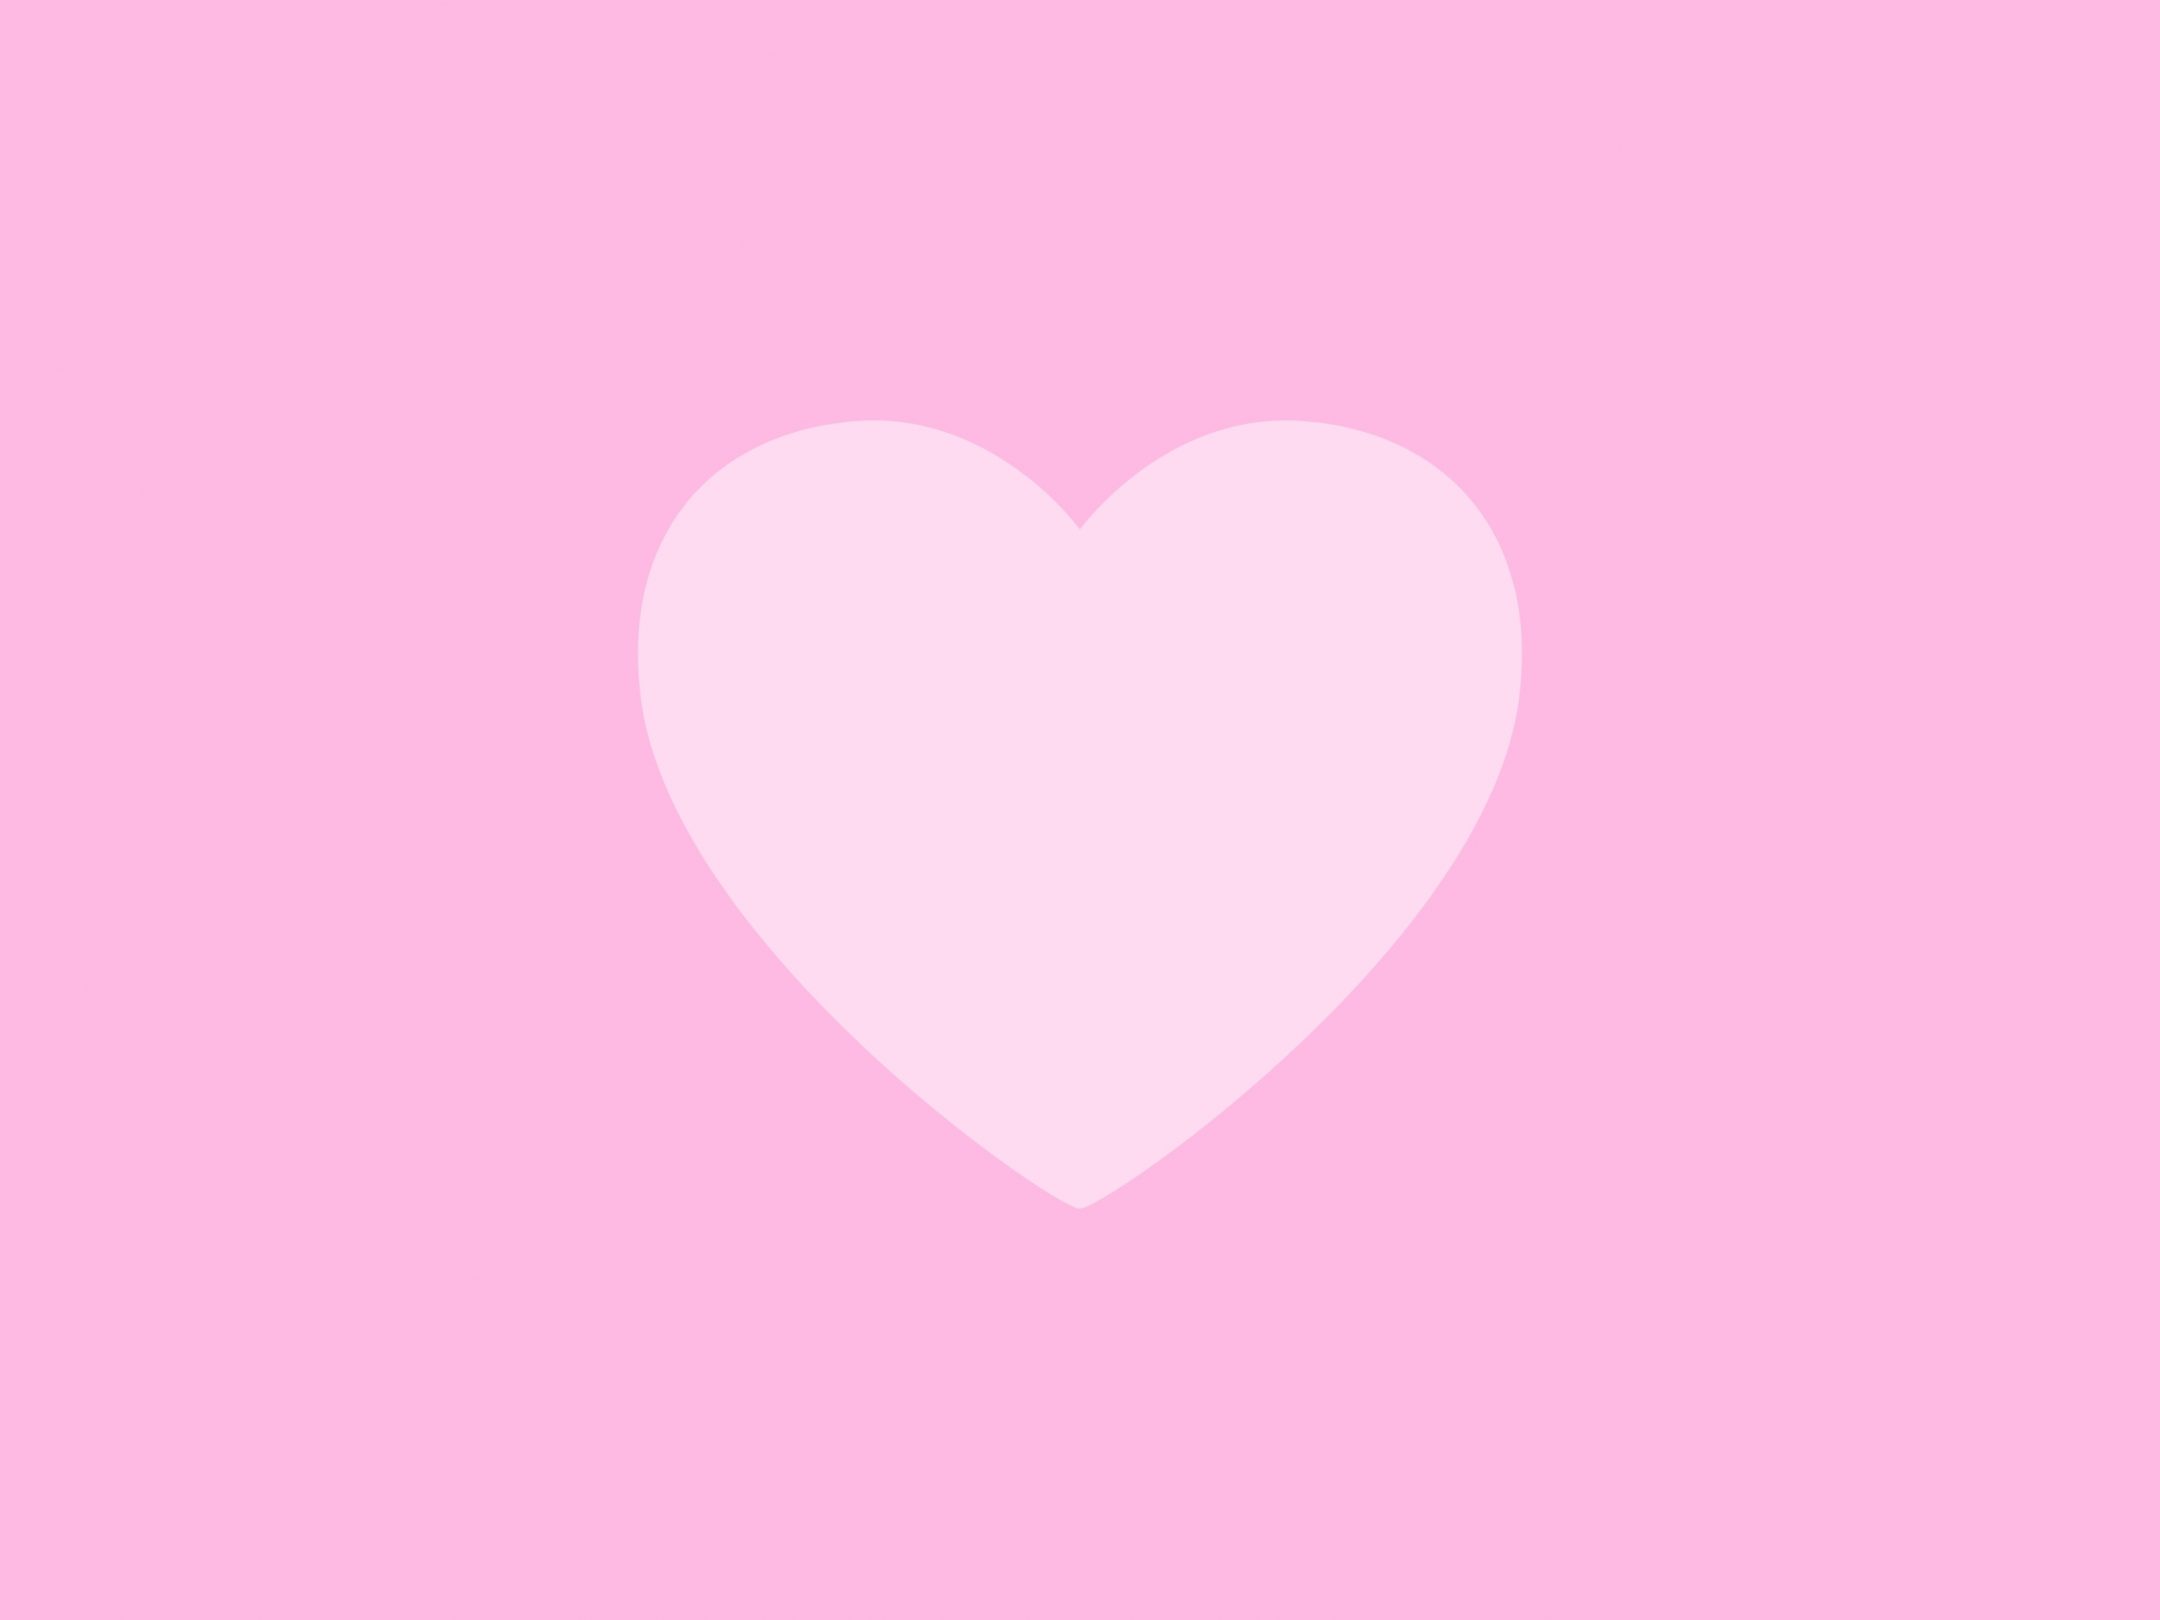 2160x1620 iPad wallpaper 4k Love Heart Pink Background iPad Wallpaper 2160x1620 pixels resolution